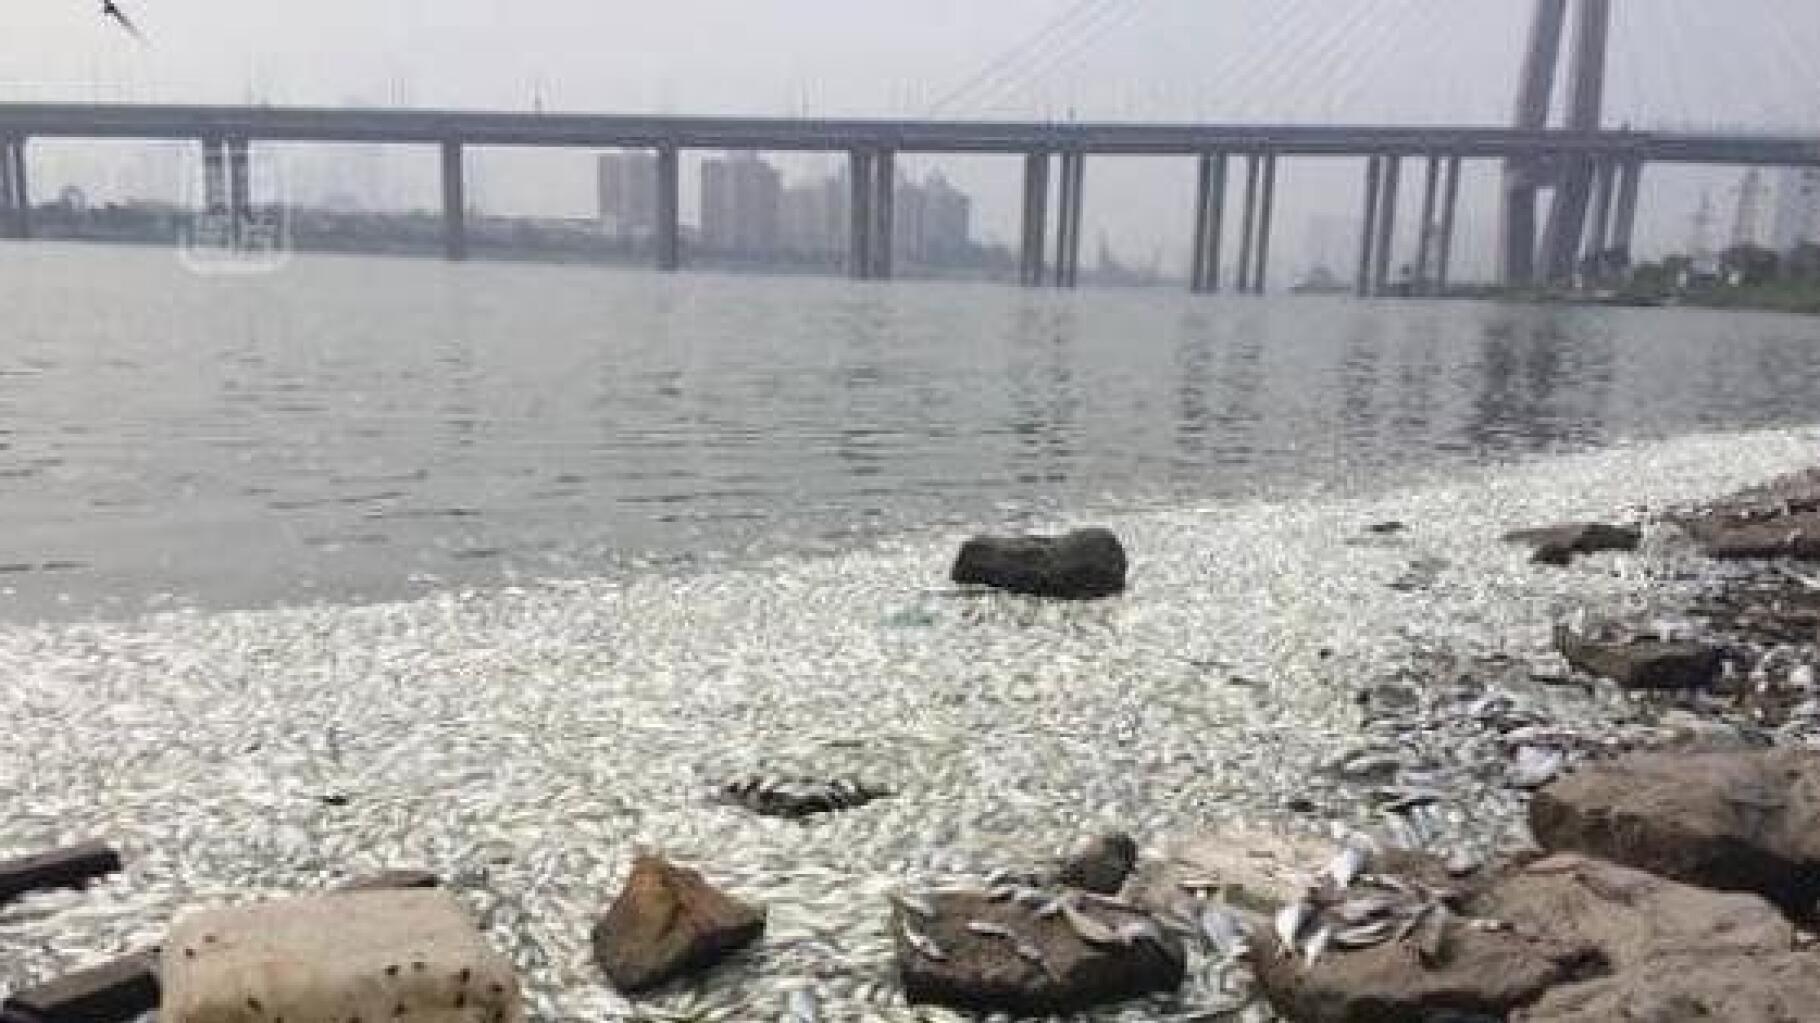 Tianjin : taux de cyanure démentiels, des milliers de poissons morts